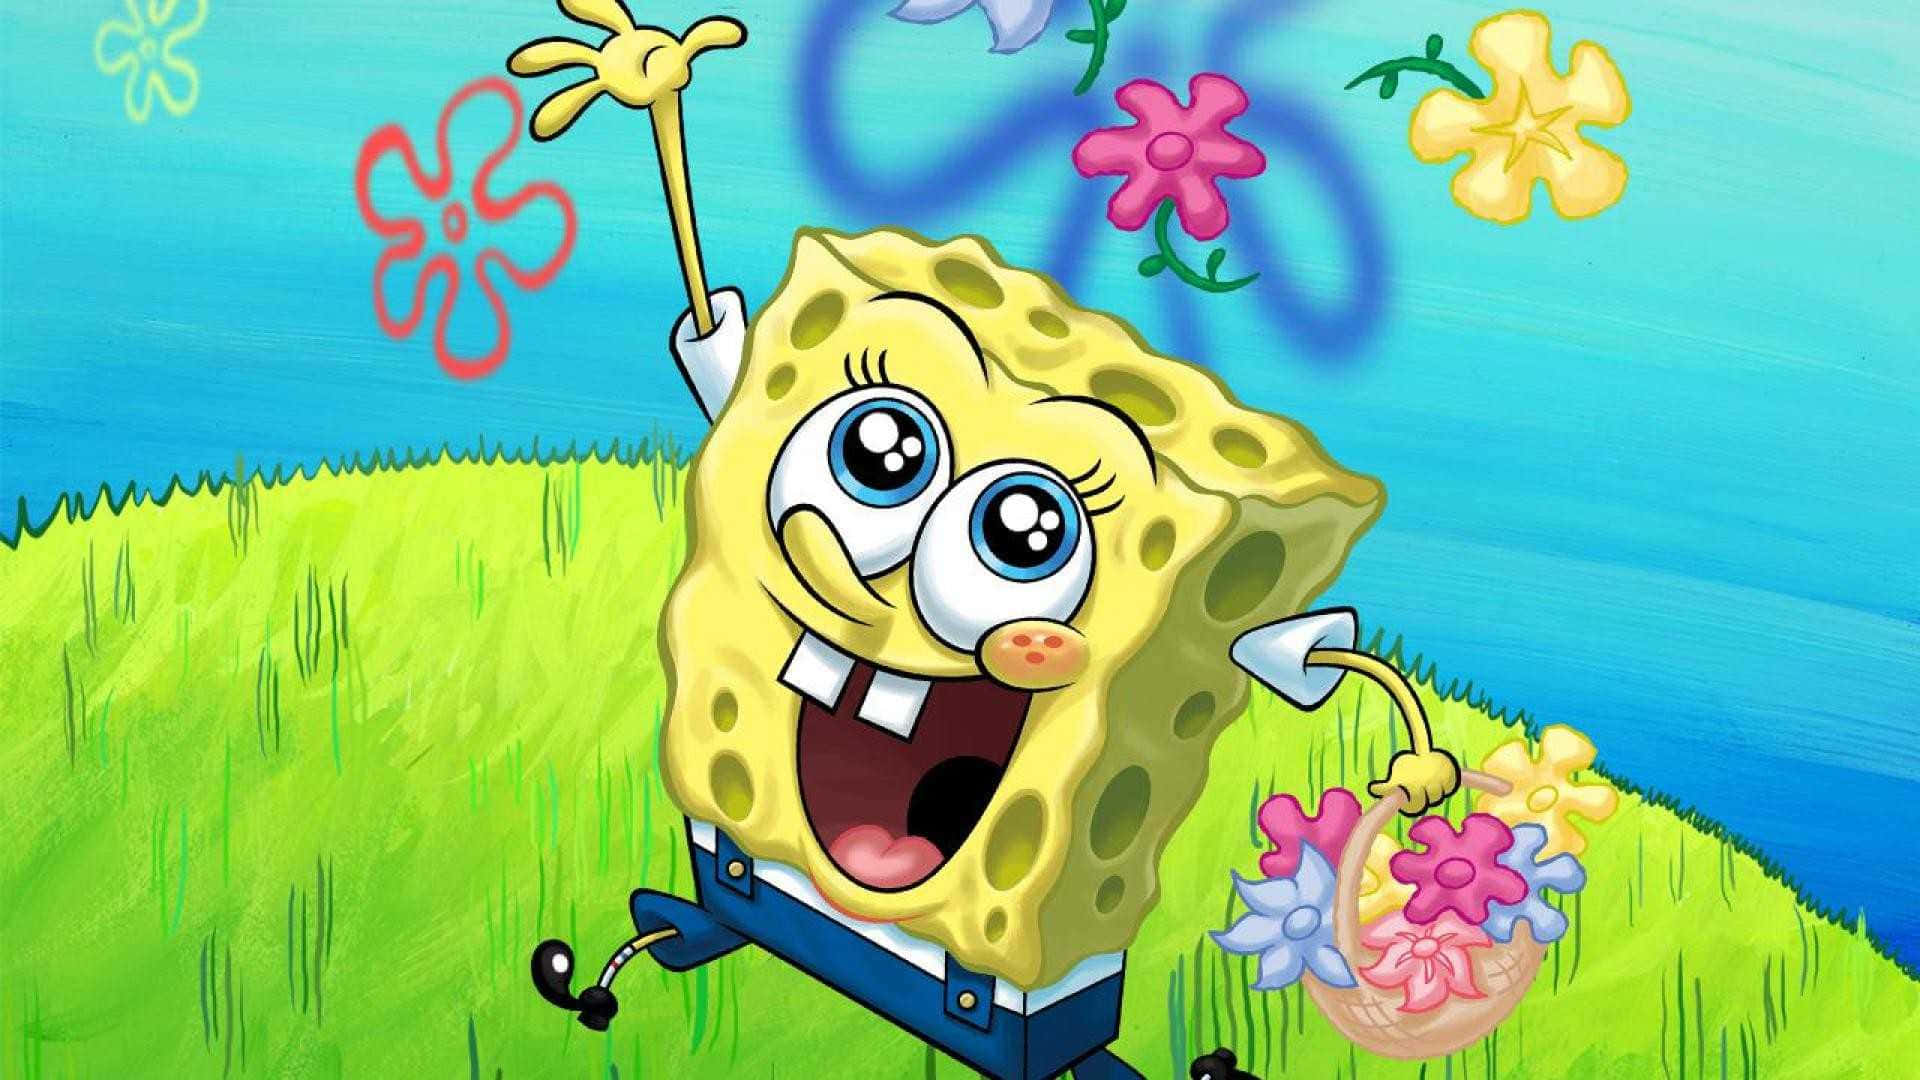 Erhellensie Ihr Leben Mit Diesem Lustigen Spongebob Ästhetik-desktop. Wallpaper